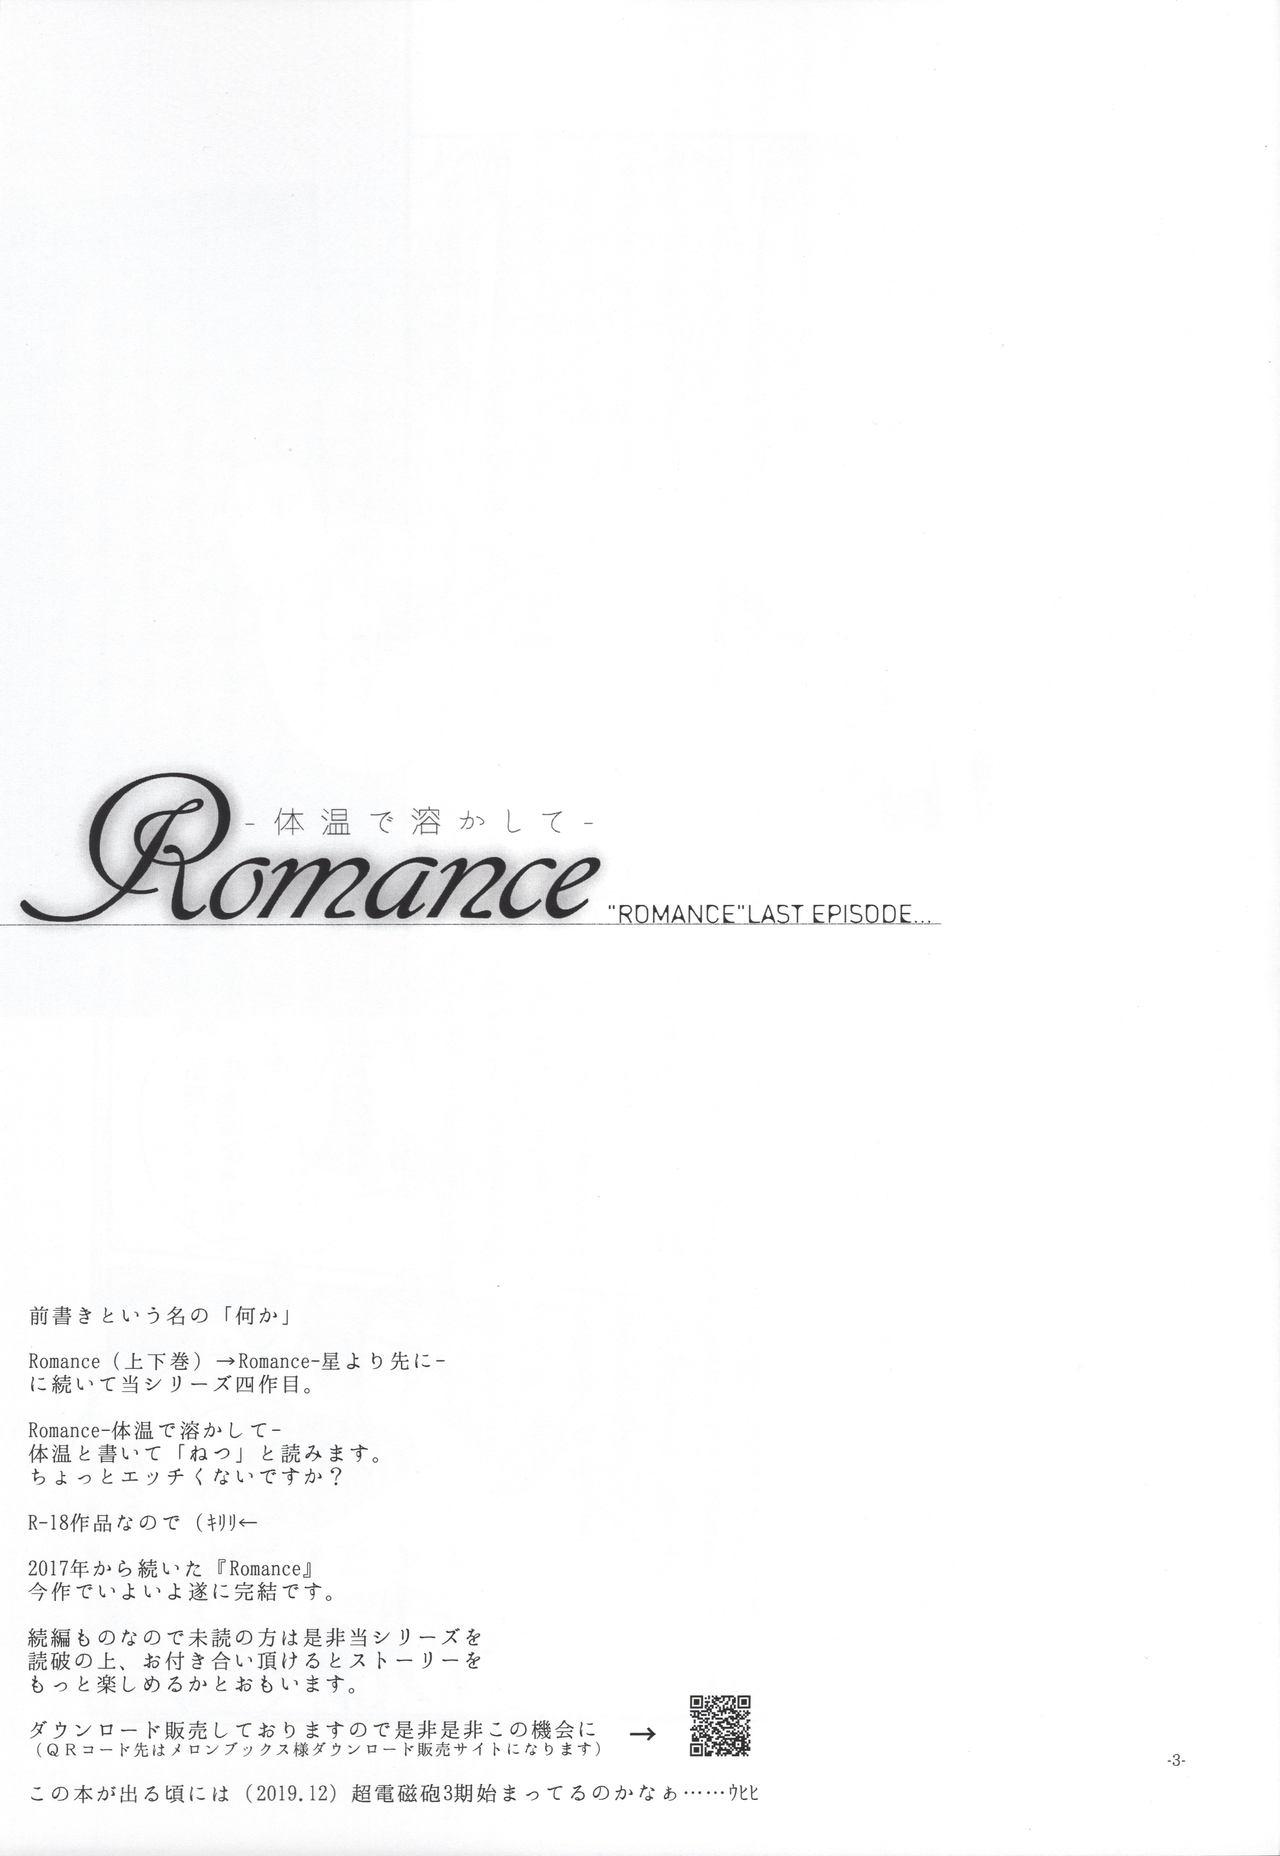 Romance 1